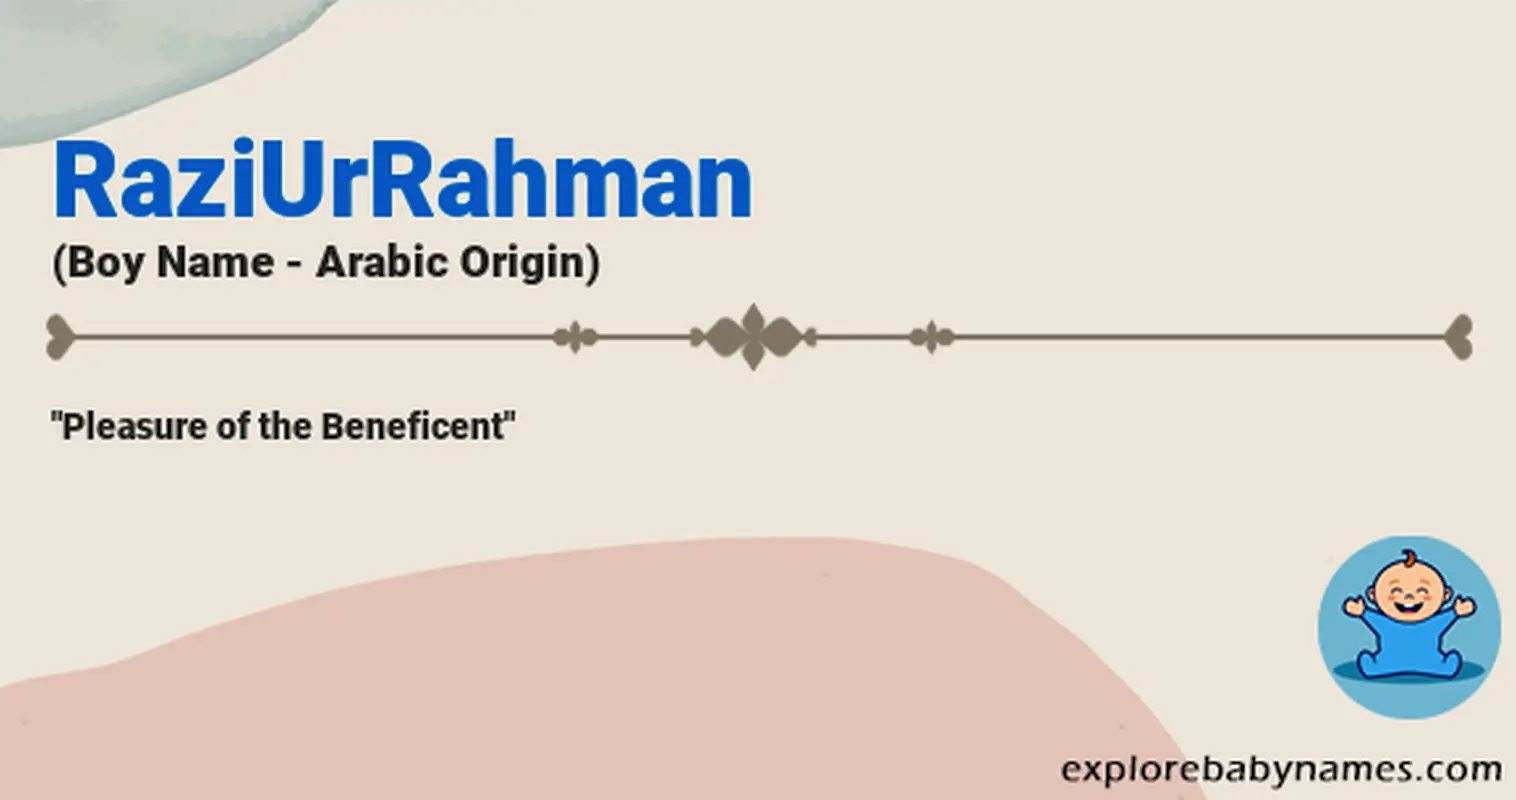 Meaning of RaziUrRahman